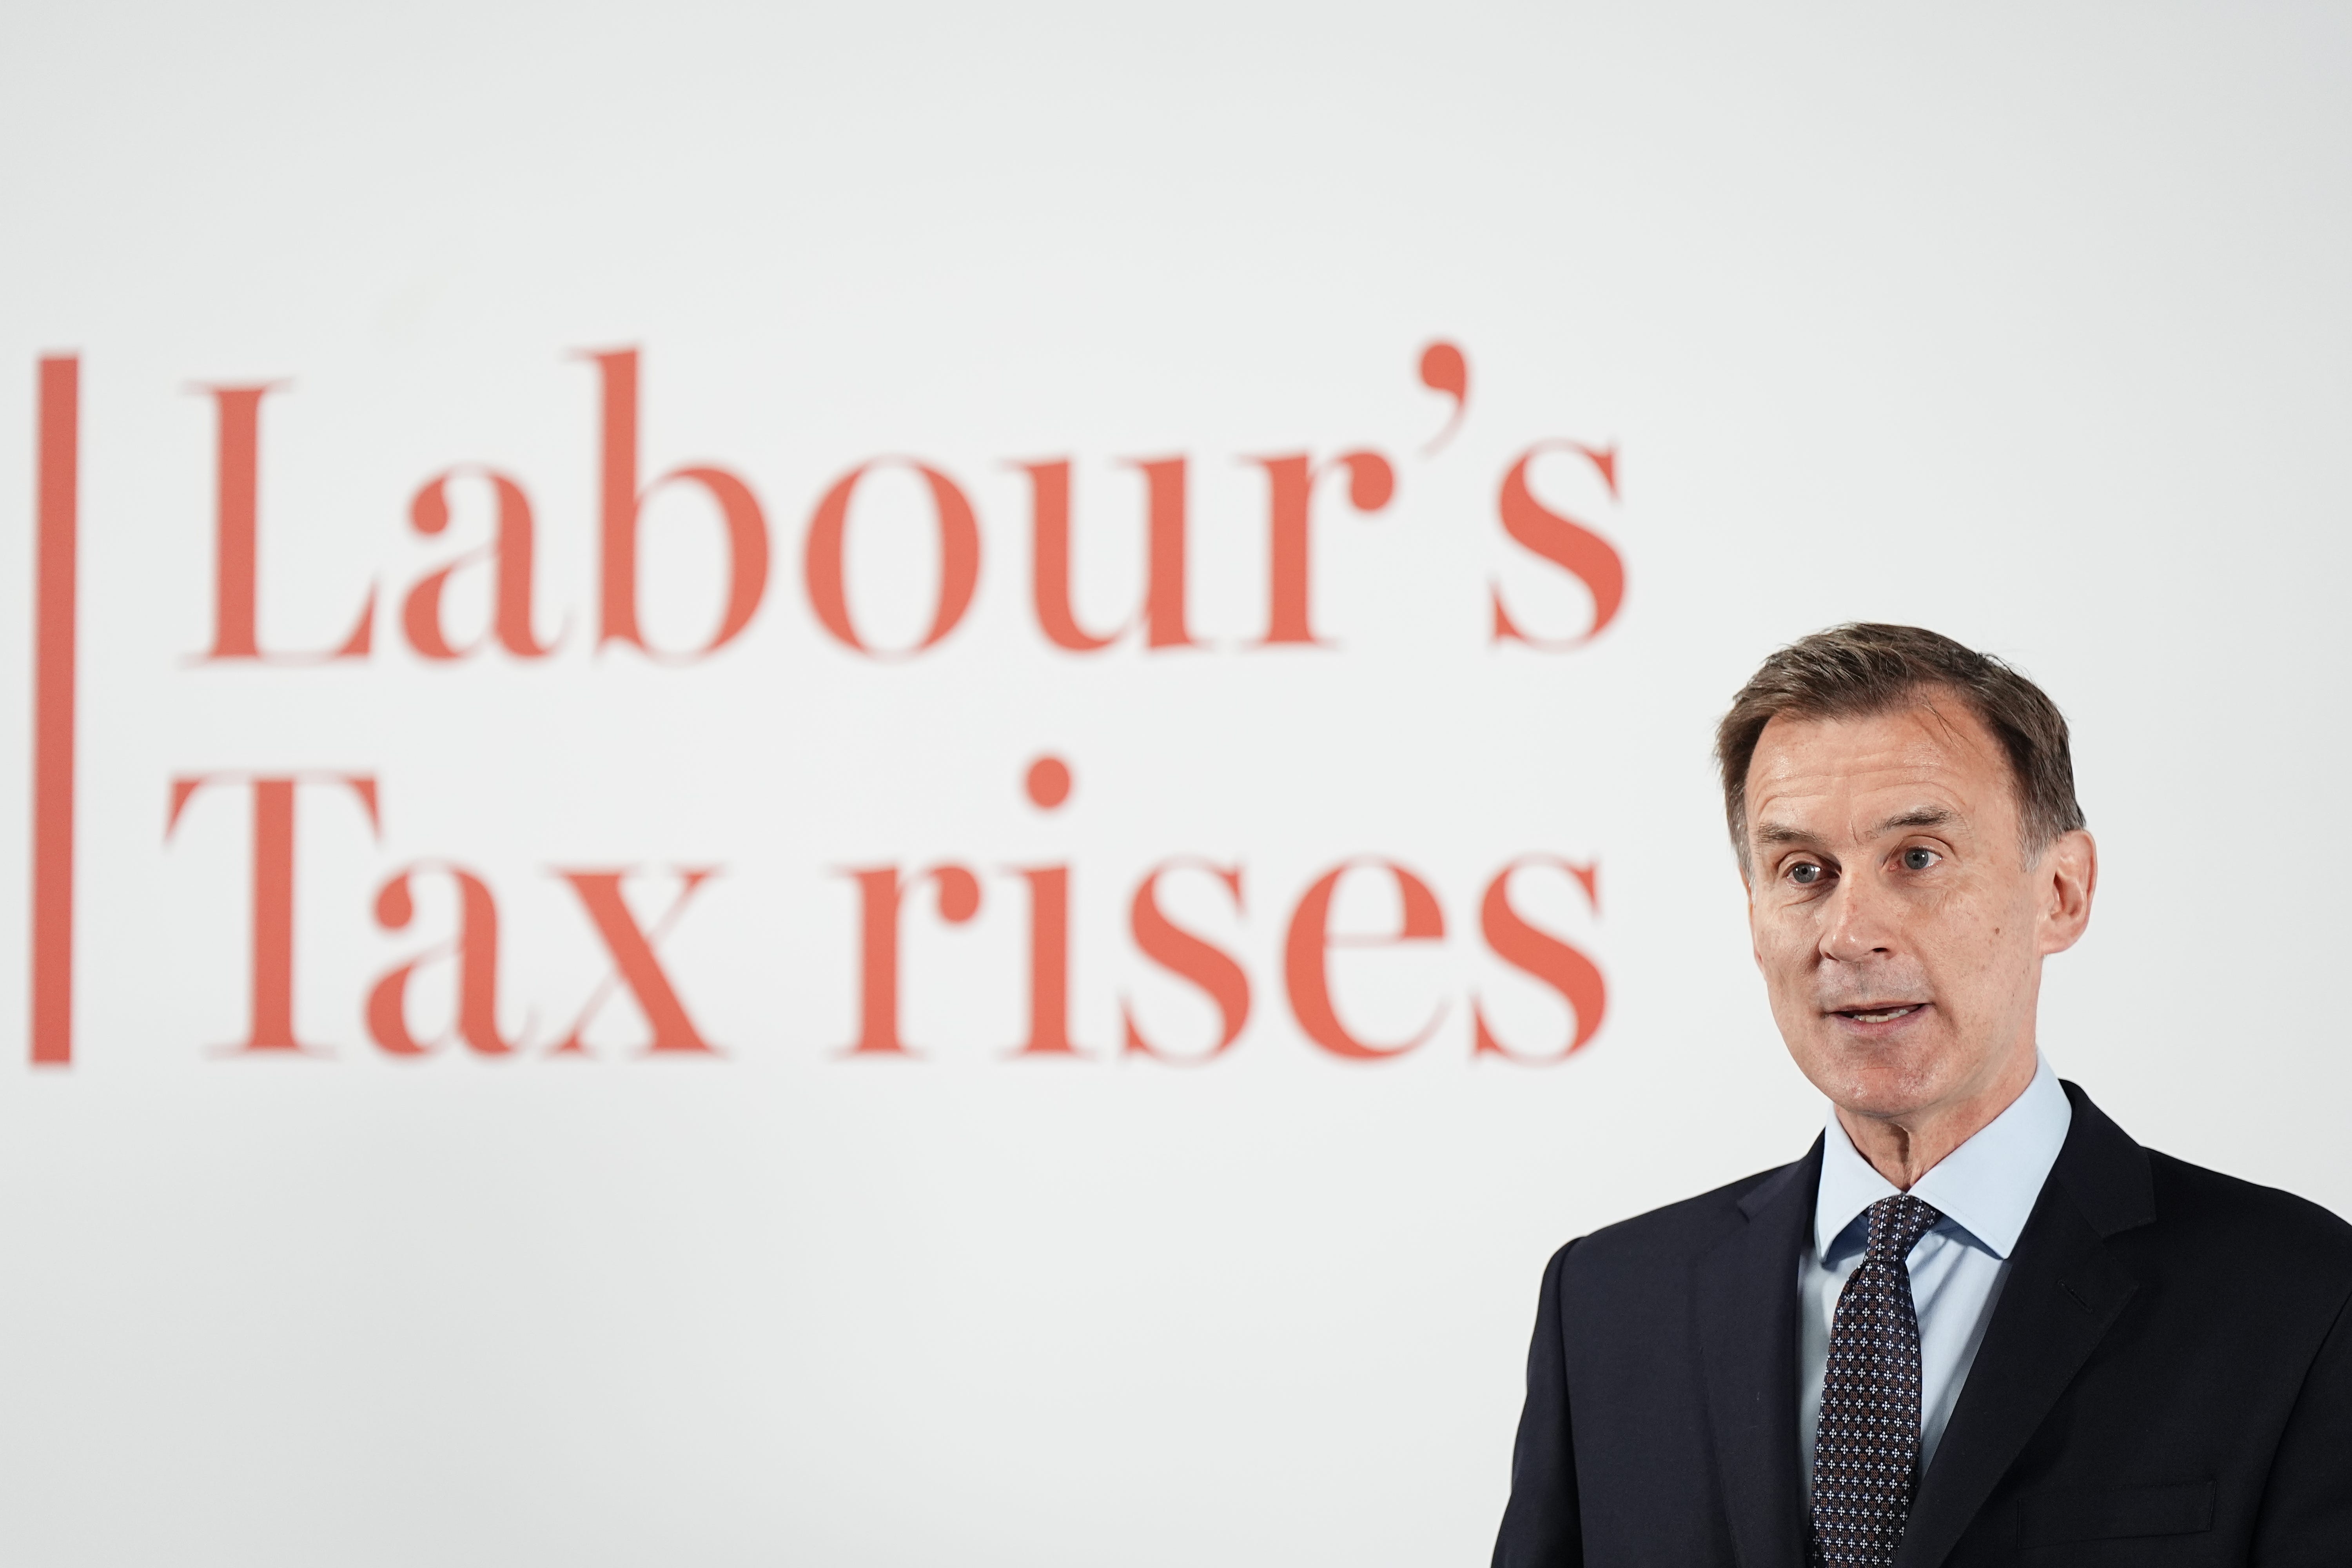 Chancellor Jeremy Hunt has attacked Labour’s economic plans